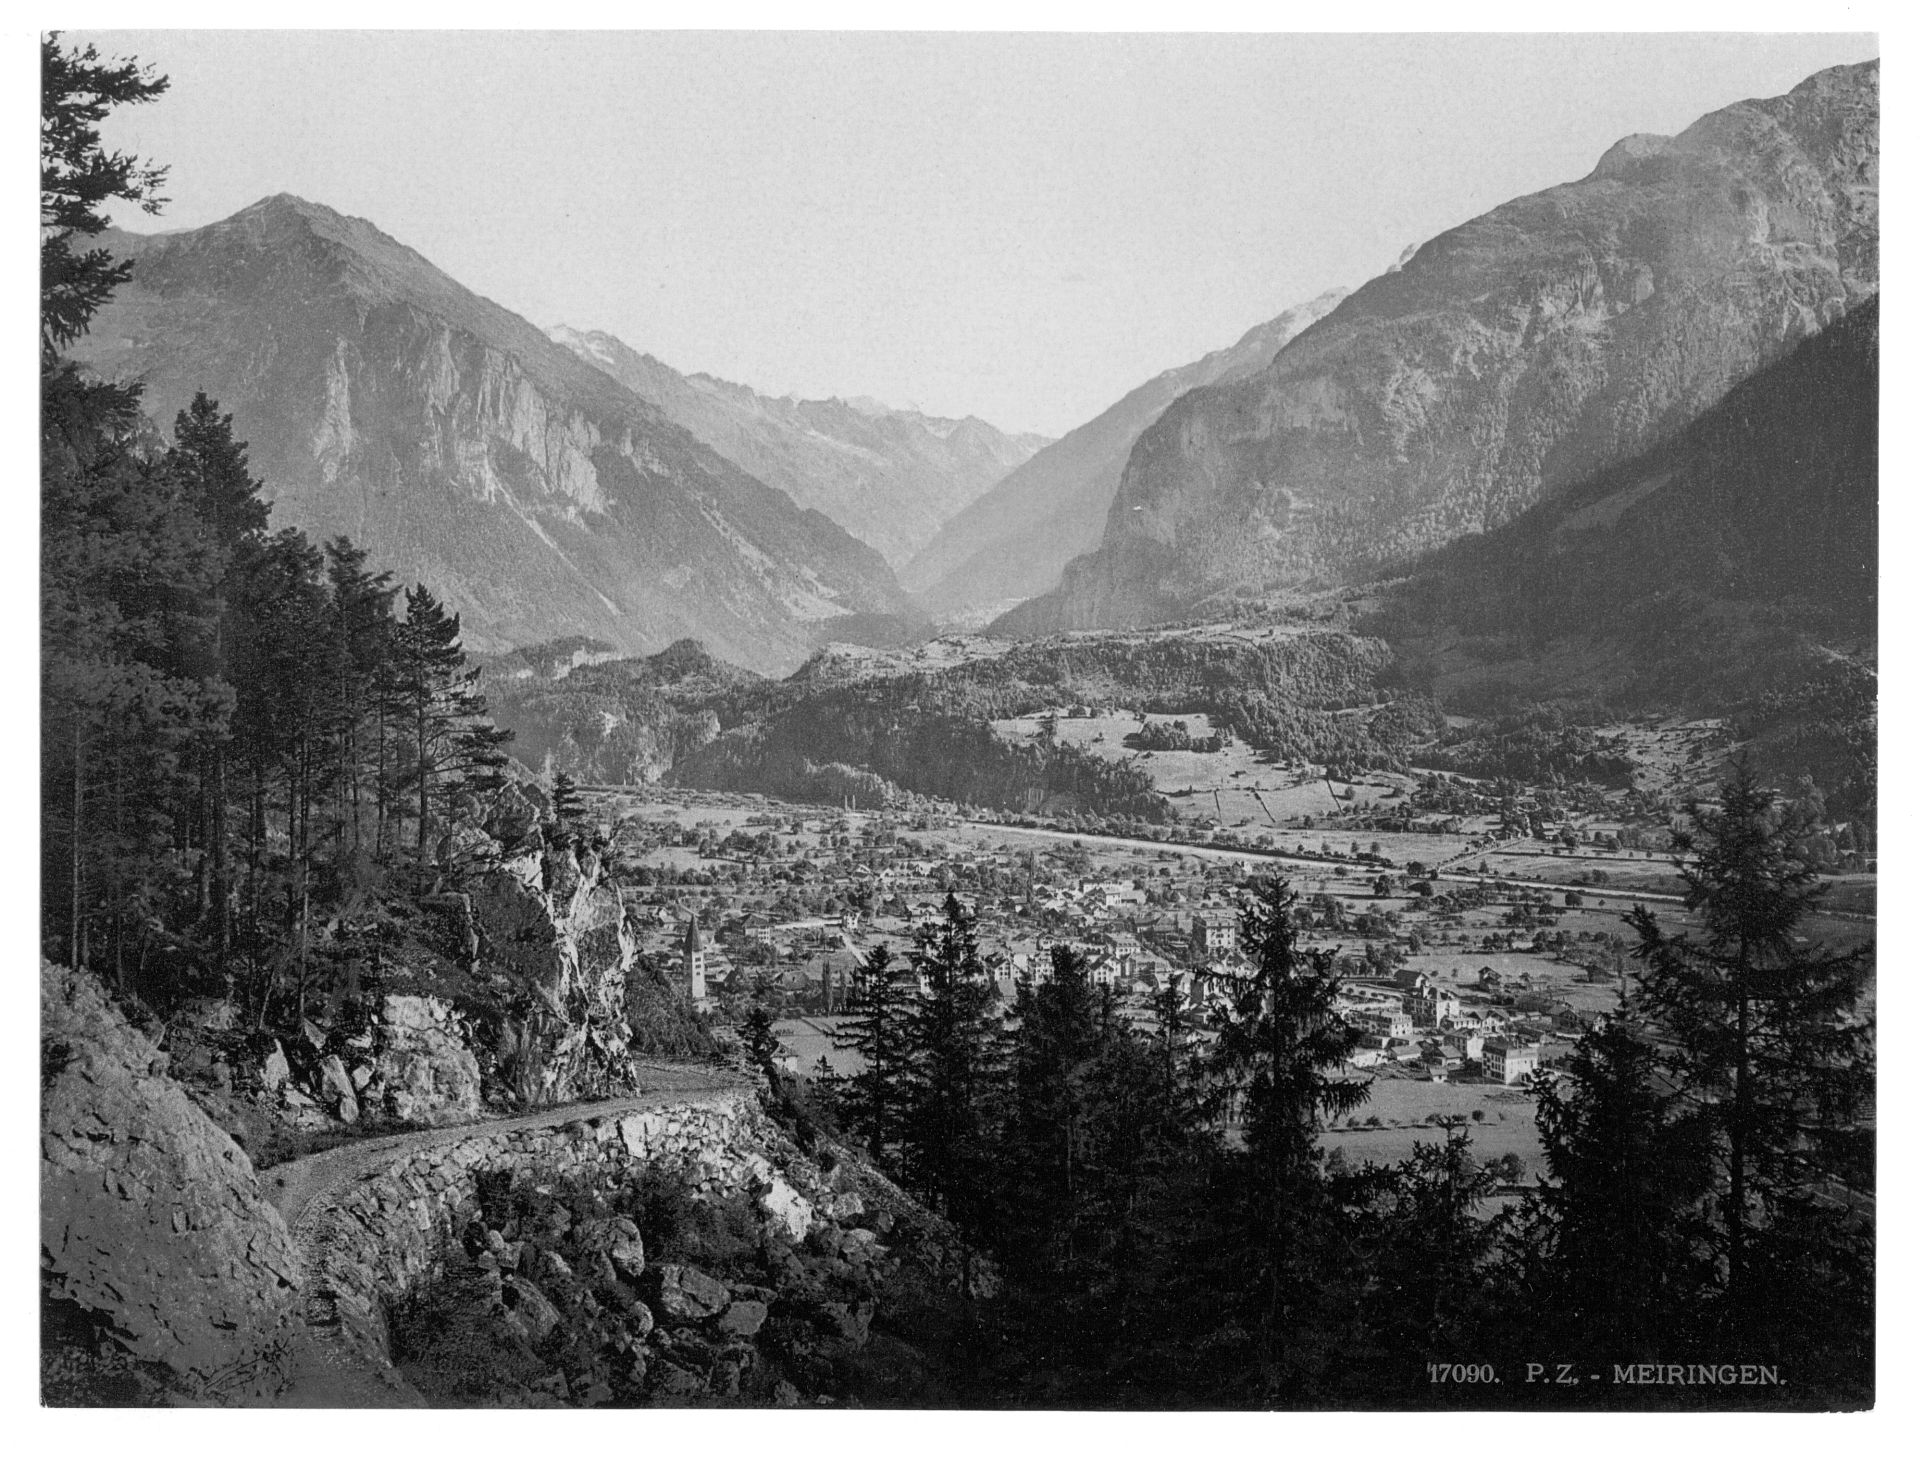 General view of Meiringen, Bernese Oberland, Switzerland